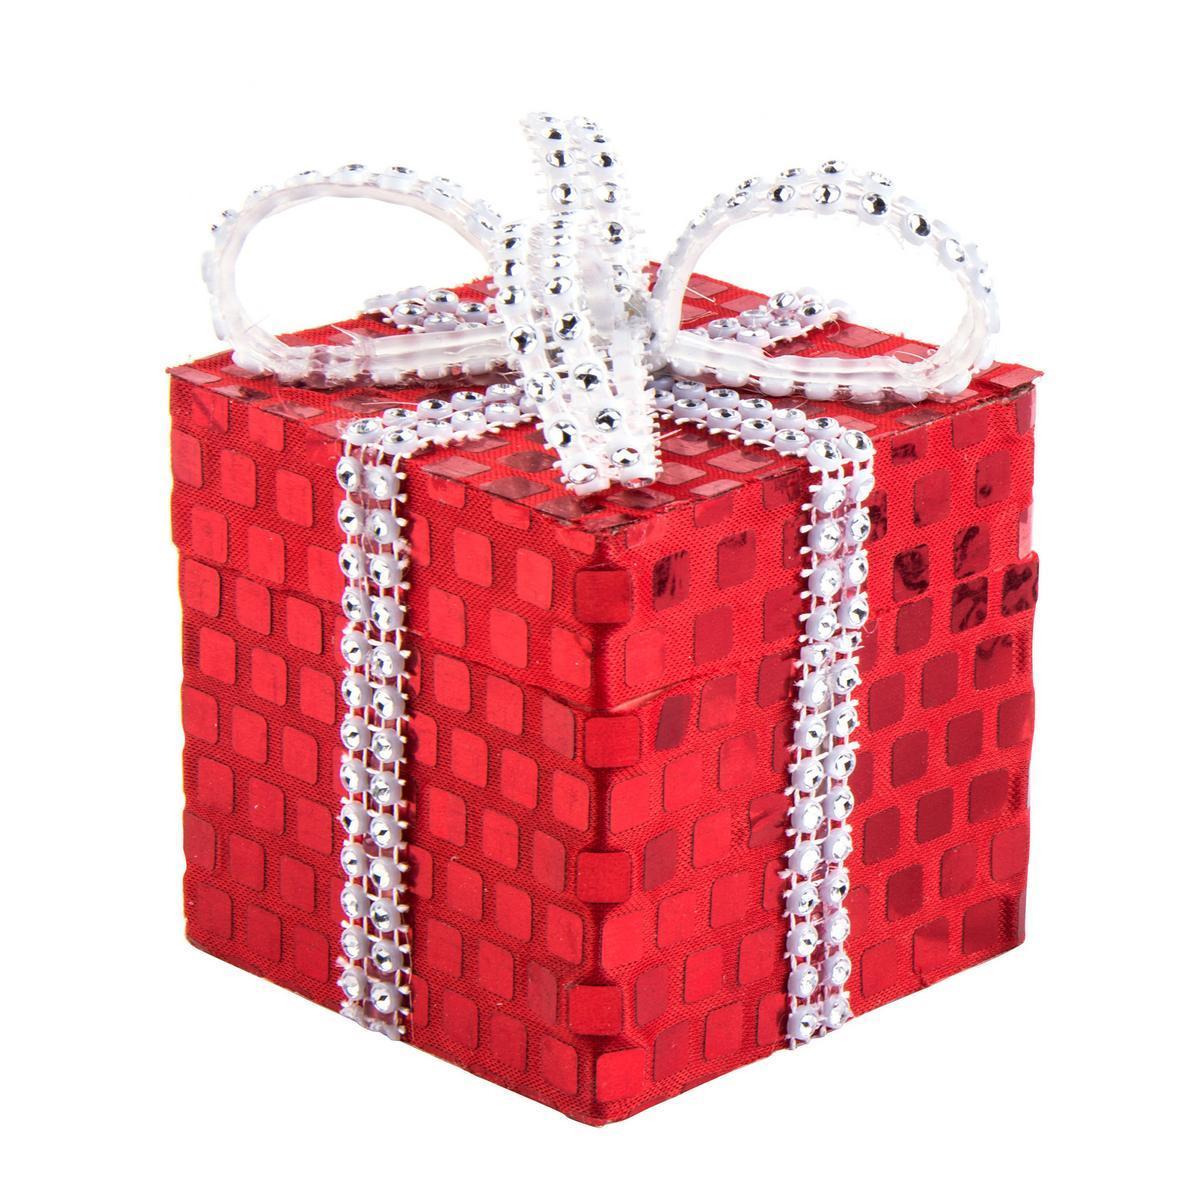 Suspension paquet cadeau - Polystyrène - 7,5 x 7,5 x H 11 cm - Rouge et doré